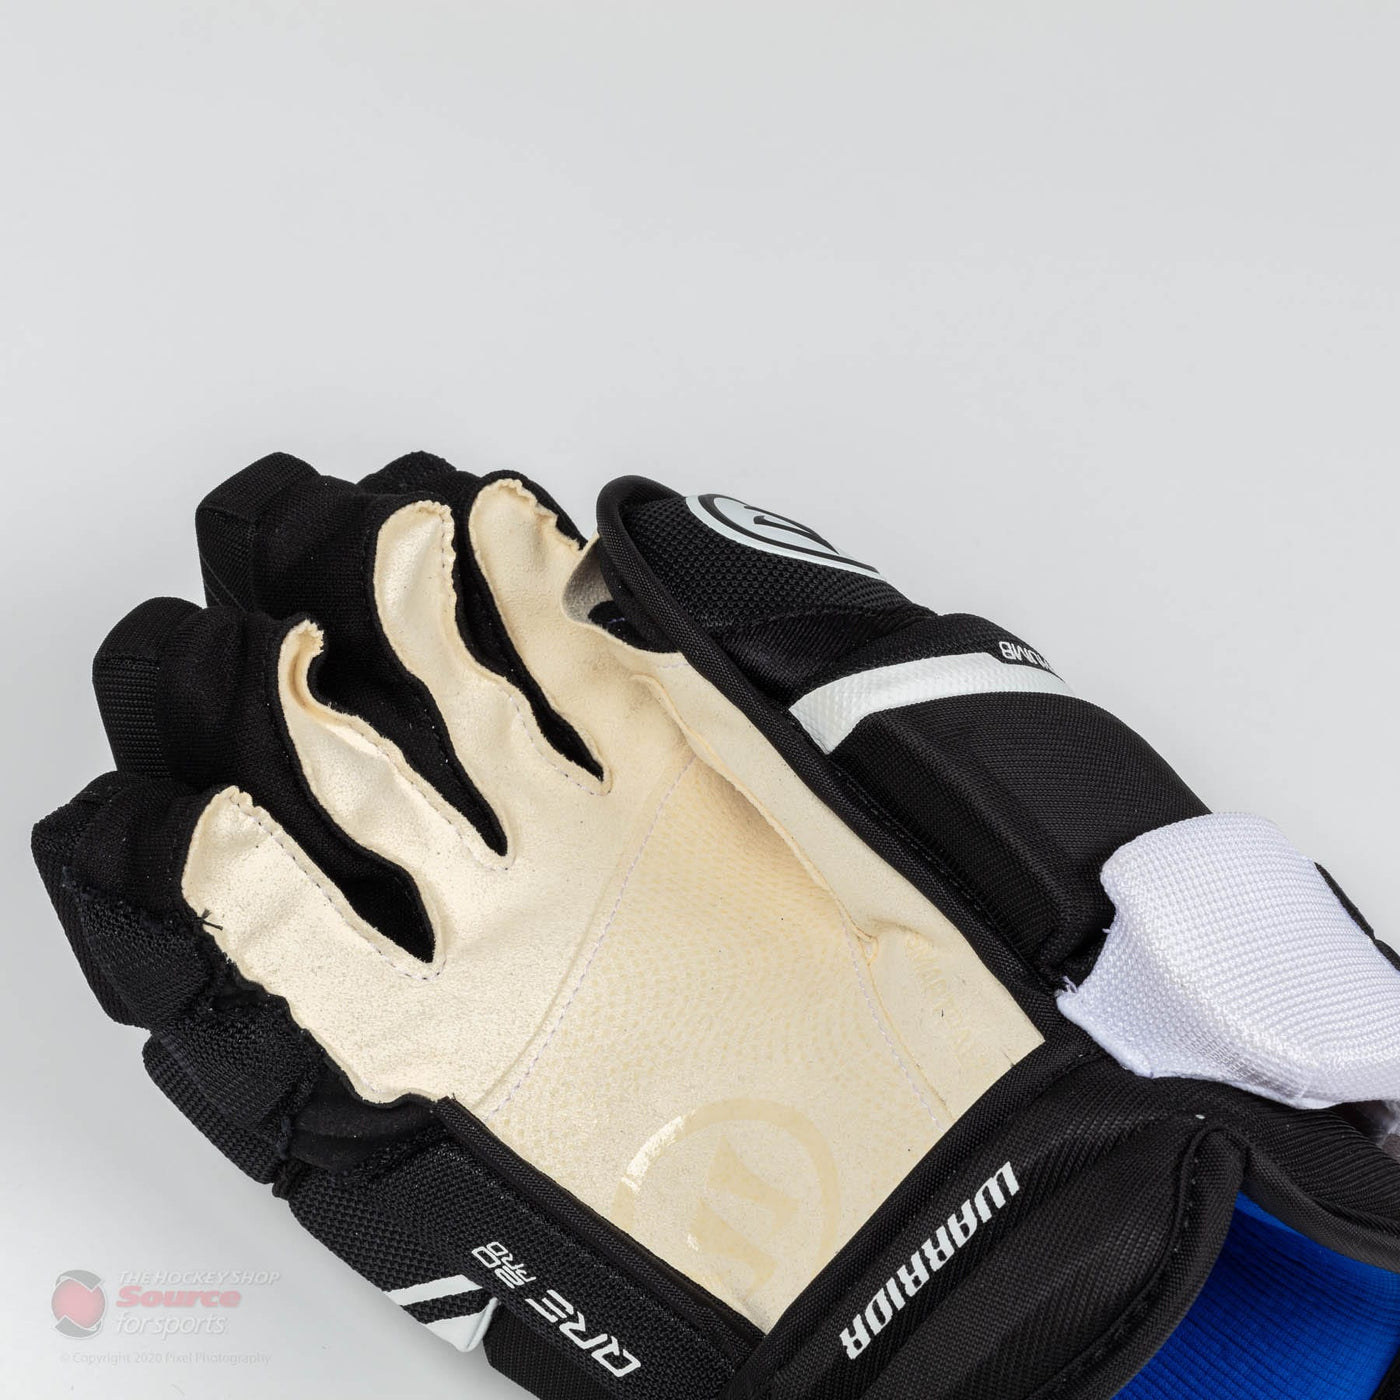 Warrior Covert QRE 20 Pro Senior Hockey Gloves